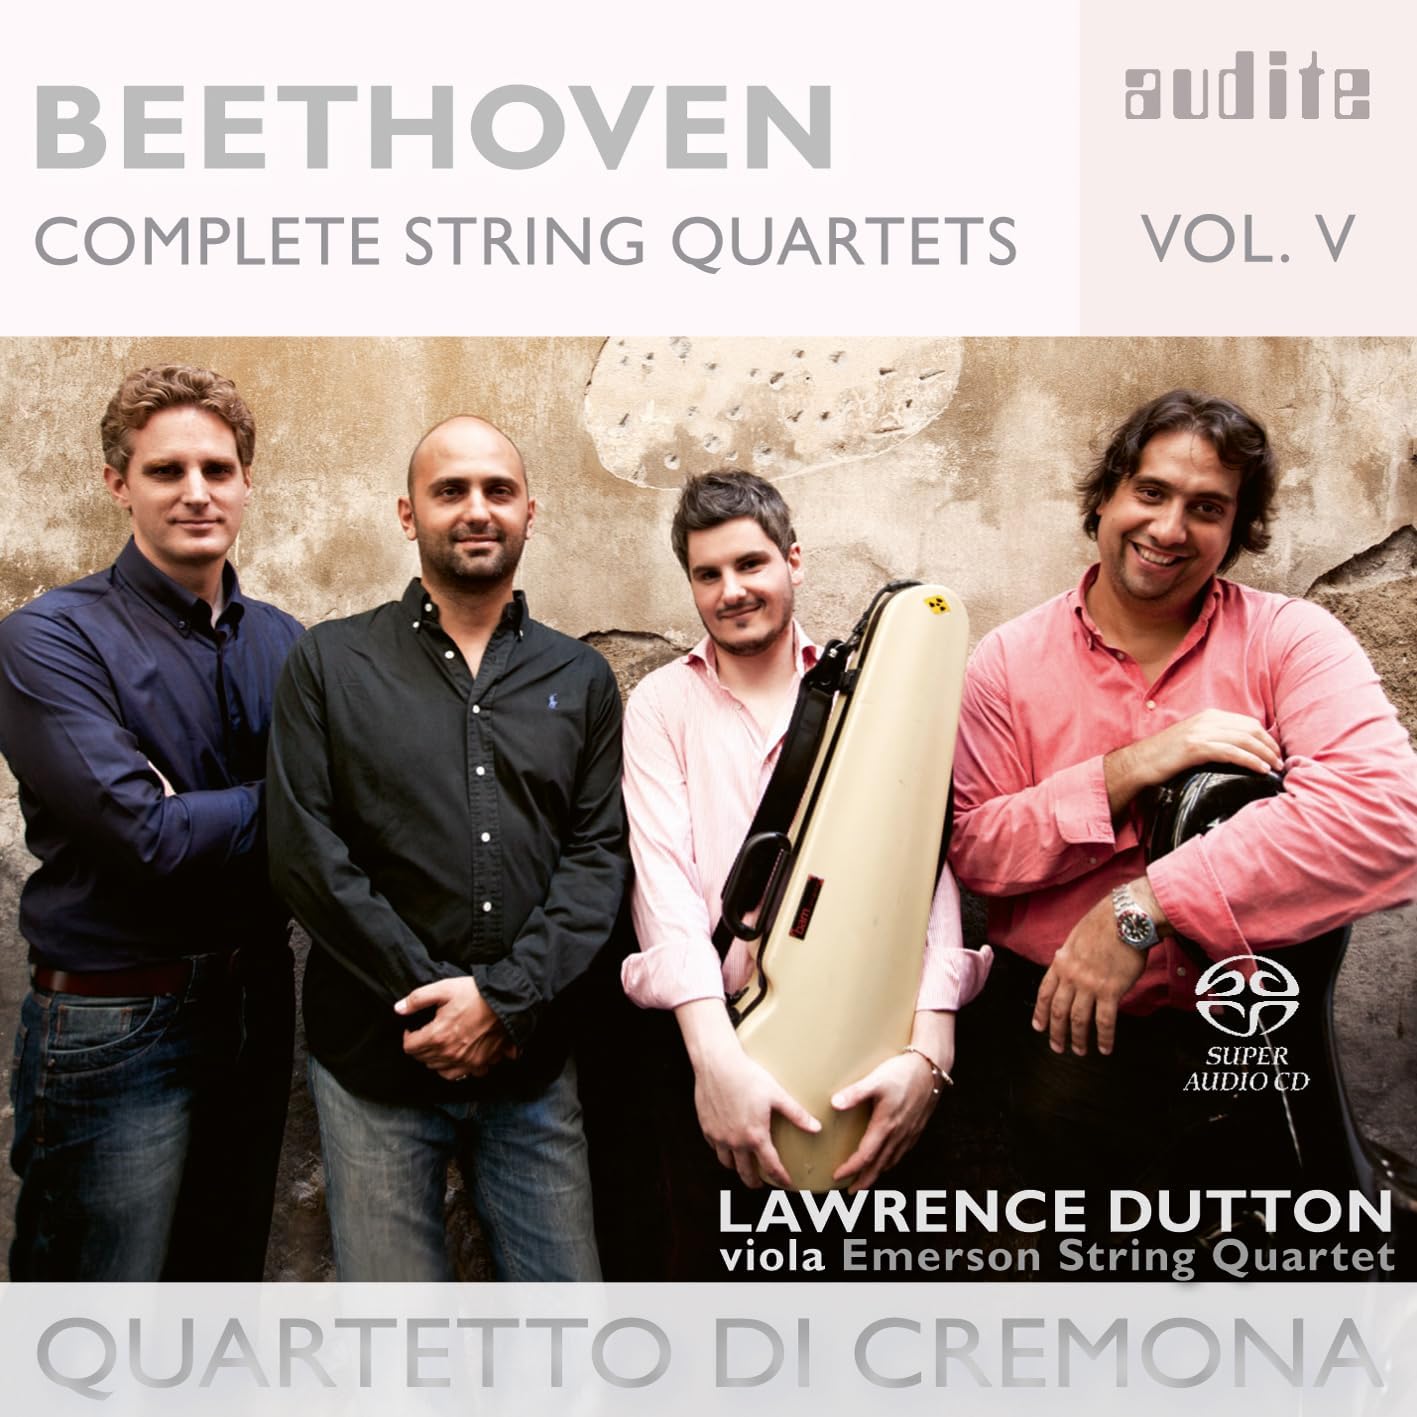 Beethoven Complete String Quartets Vol. V